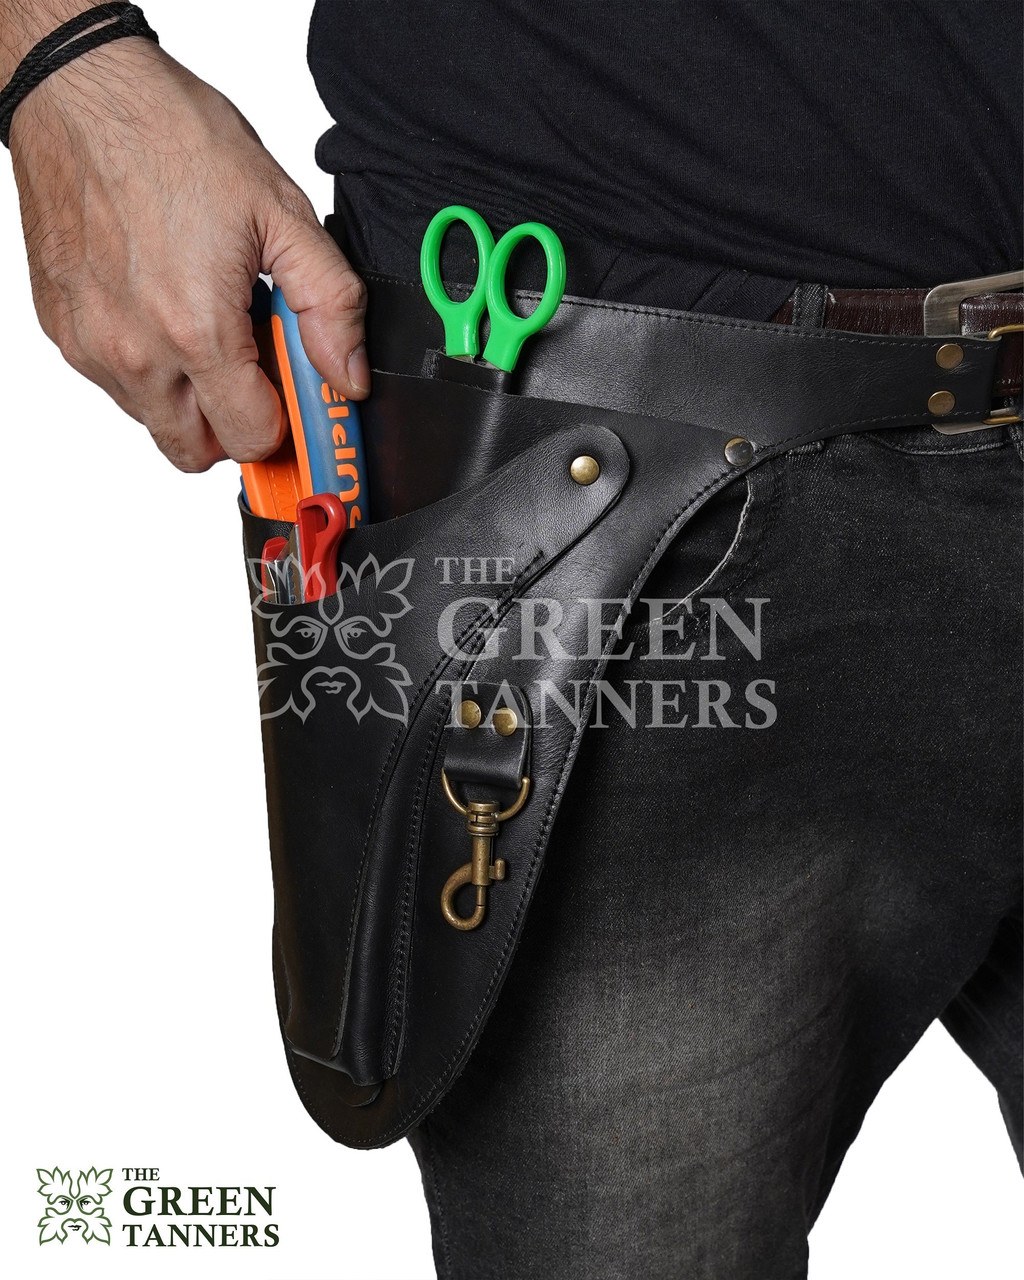 Leather Tool Belt,leather Florist Belt,floral Belt Bag,leather Utility  Belt,farm Belt,florist Tool Belt,garden Tool Bag 